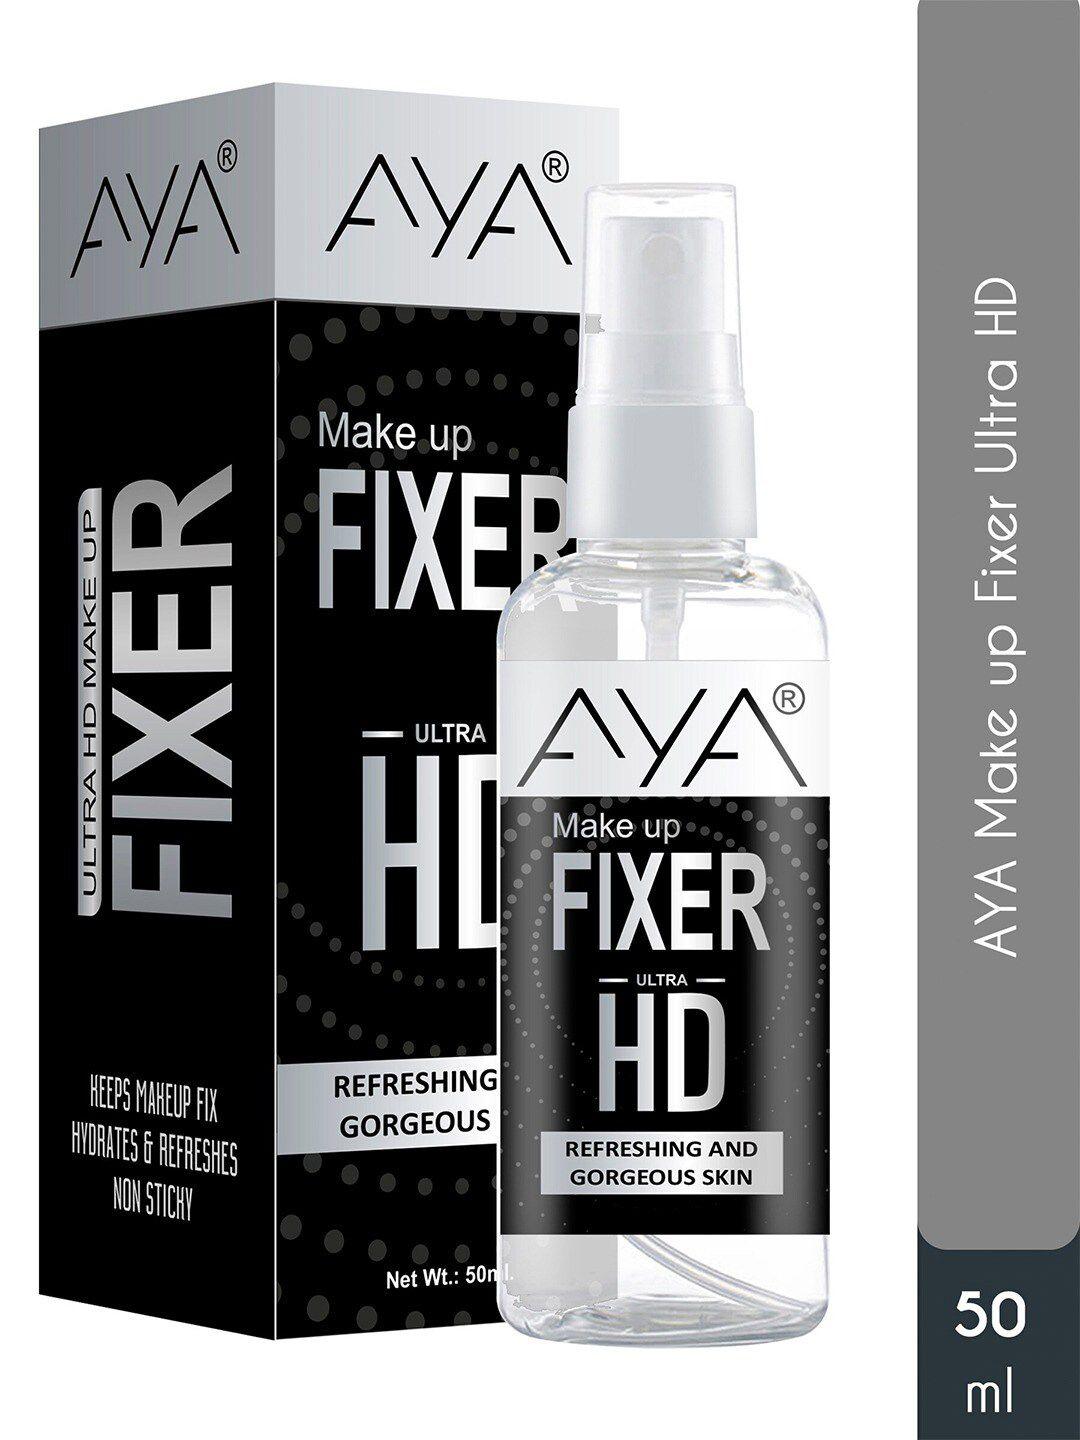 aya ultra hd makeup fixer for refreshing & gorgeous skin - 50 ml